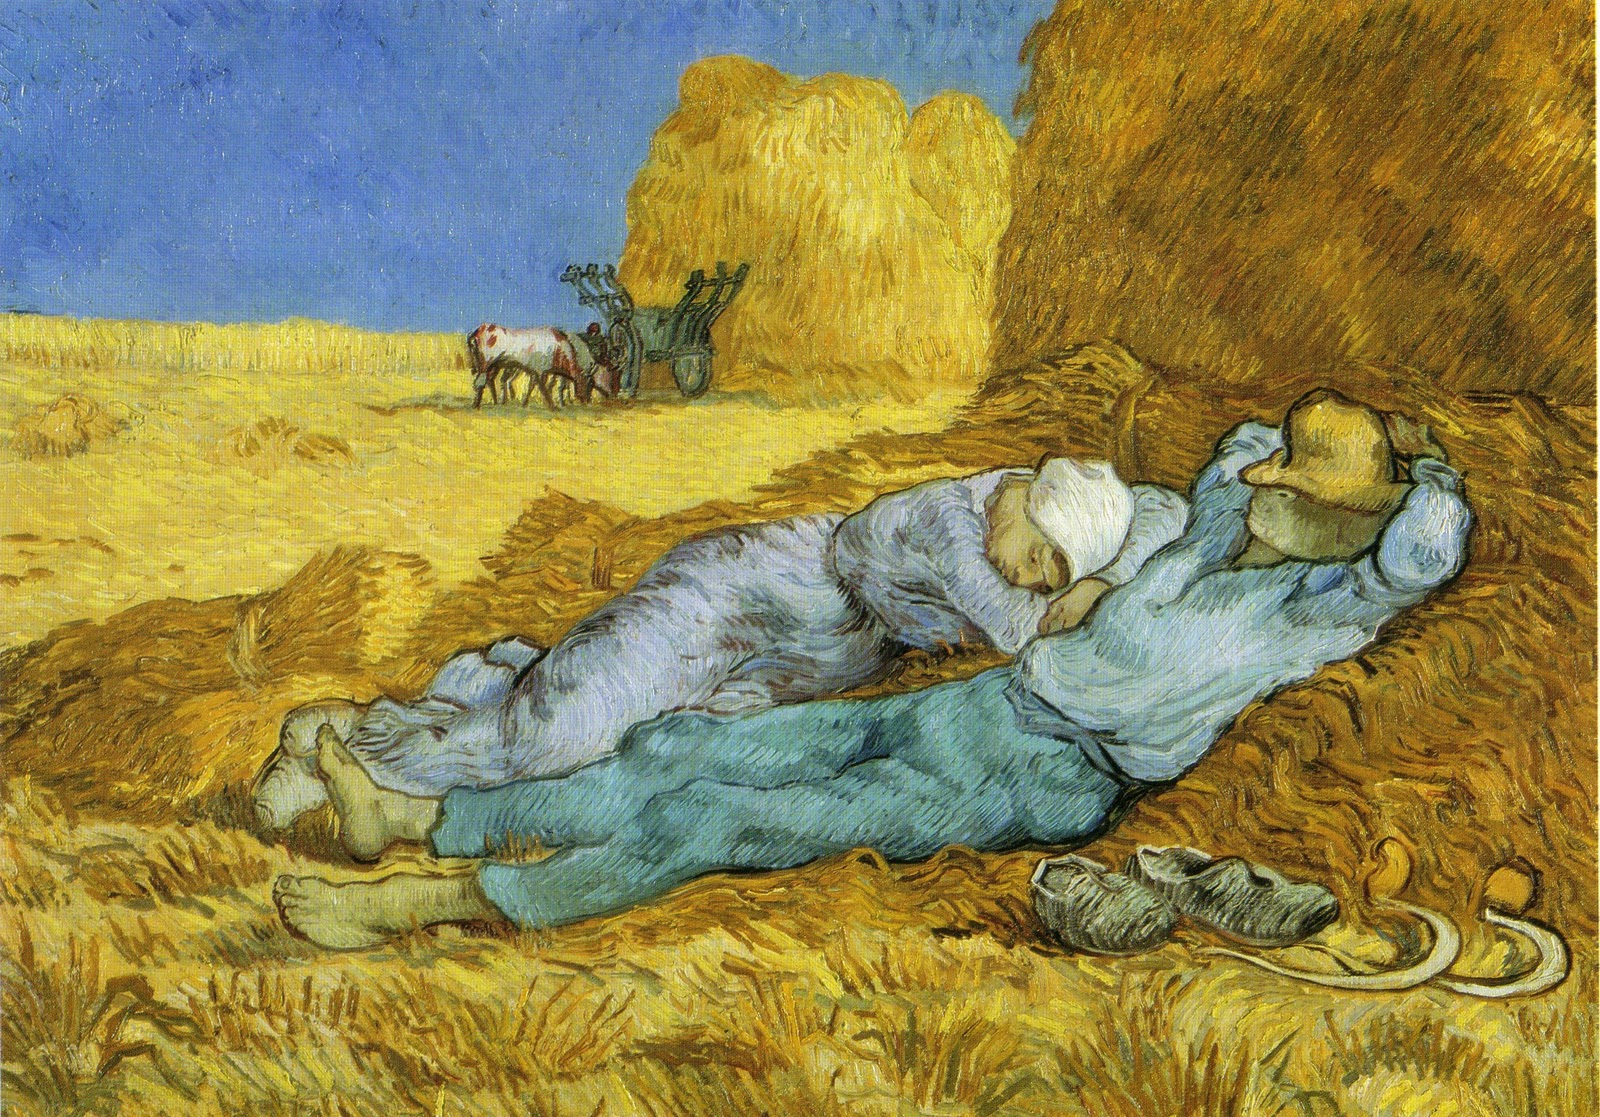 Van Gogh - Siesta